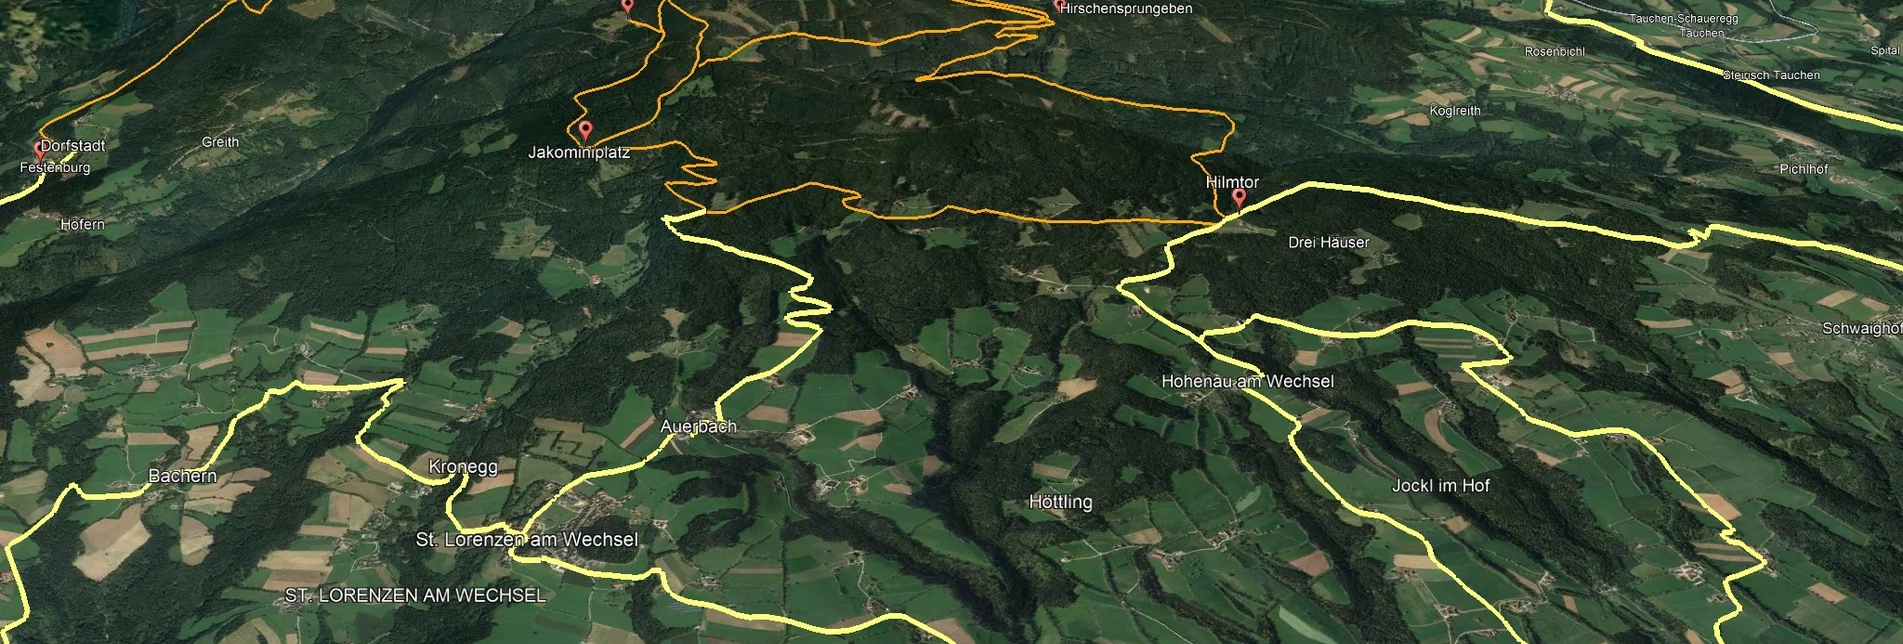 Mountainbike VORSCHAU Steirische Wexl Trails - Kogelweg Route - Touren-Impression #1 | © Verein Tourismusentwicklung Steirischer Wechsel